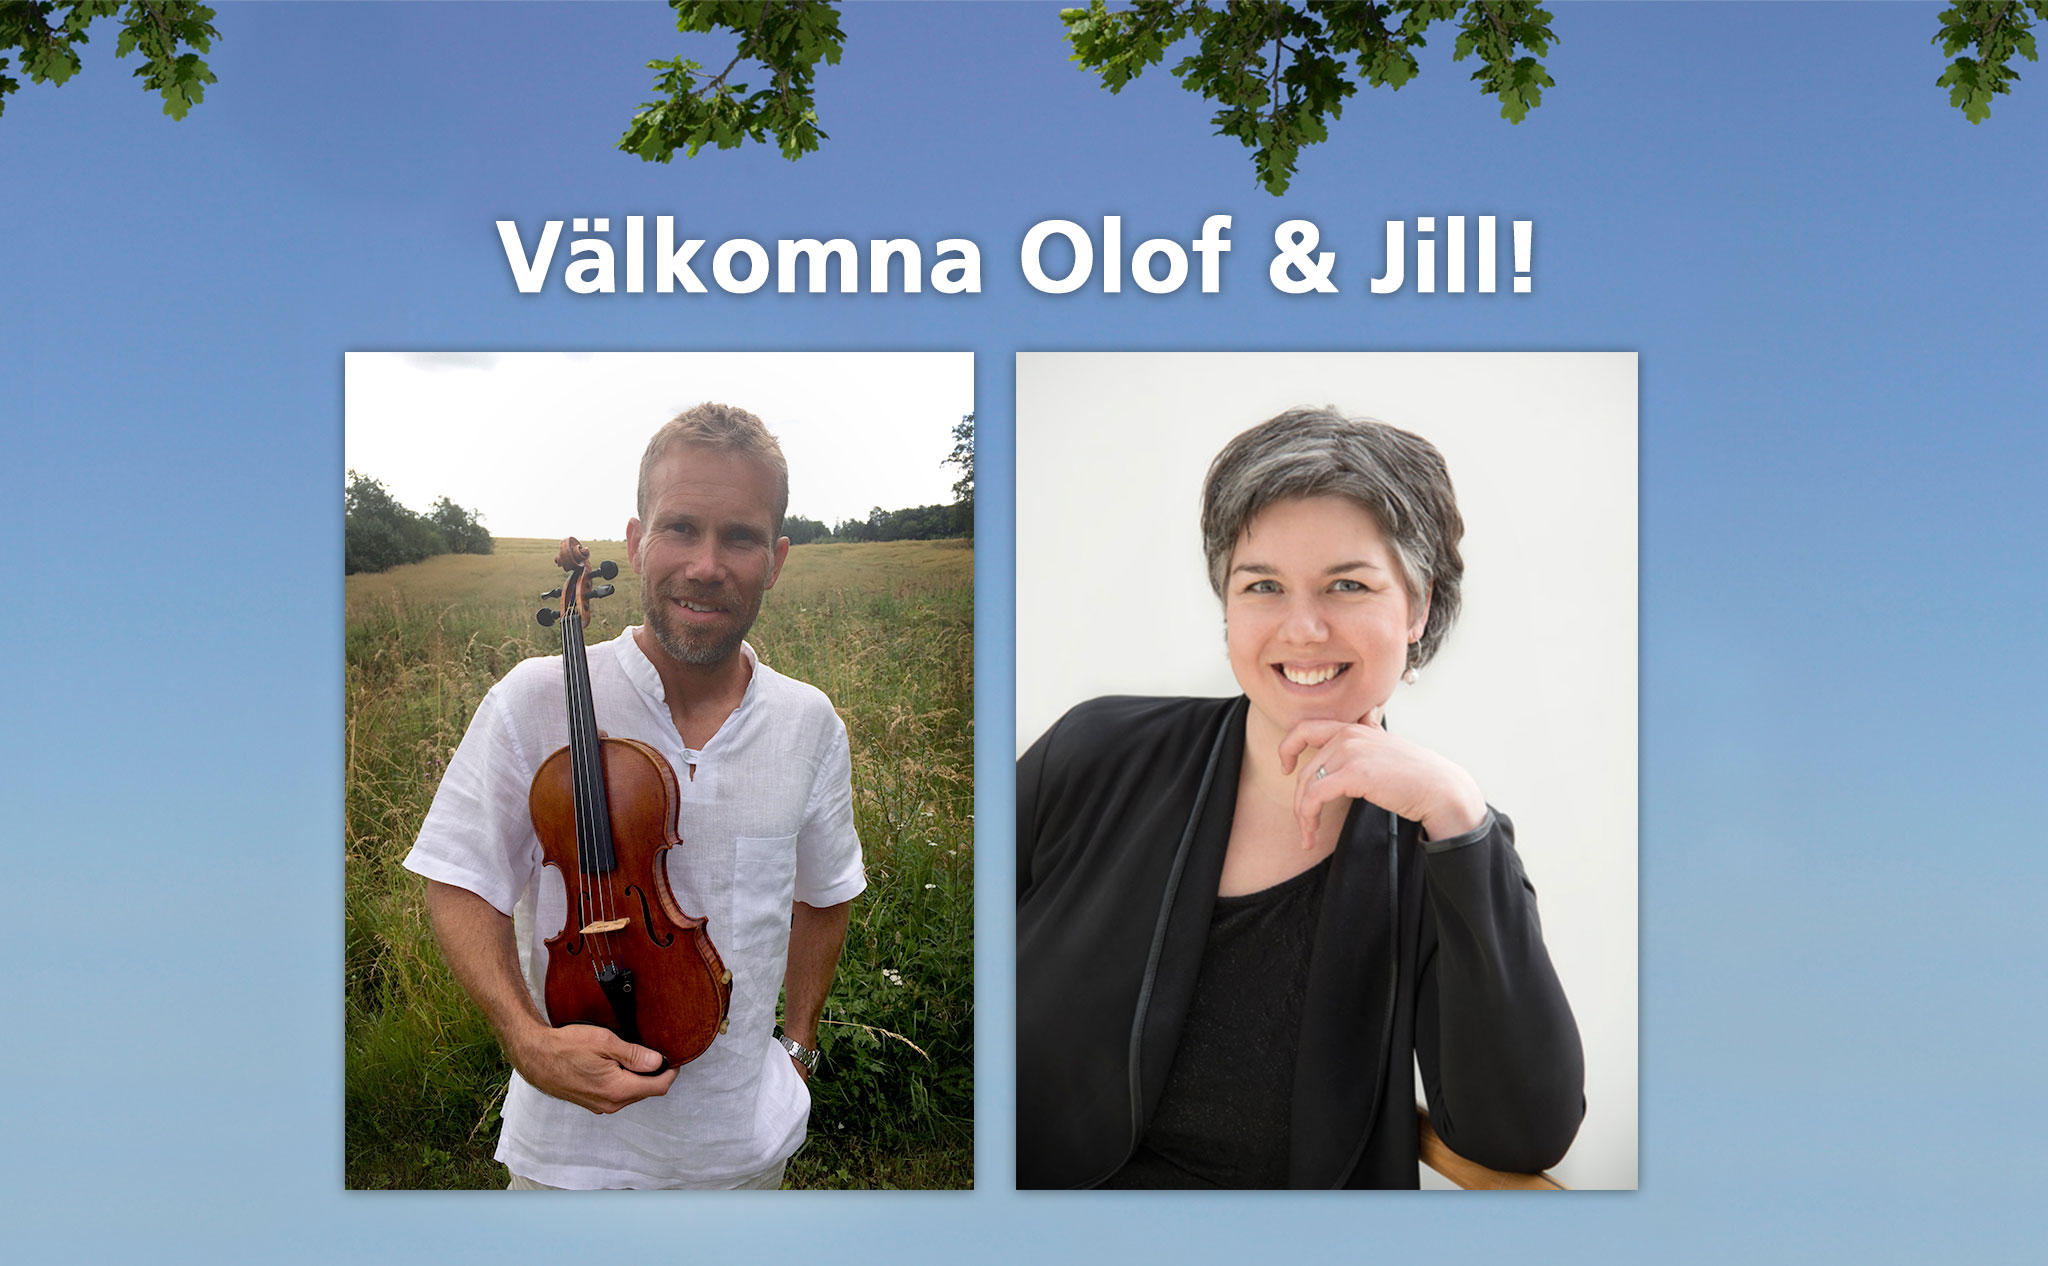 Porträttbilder på Olof och Jill med texten "Välkomna Olof & Jill"